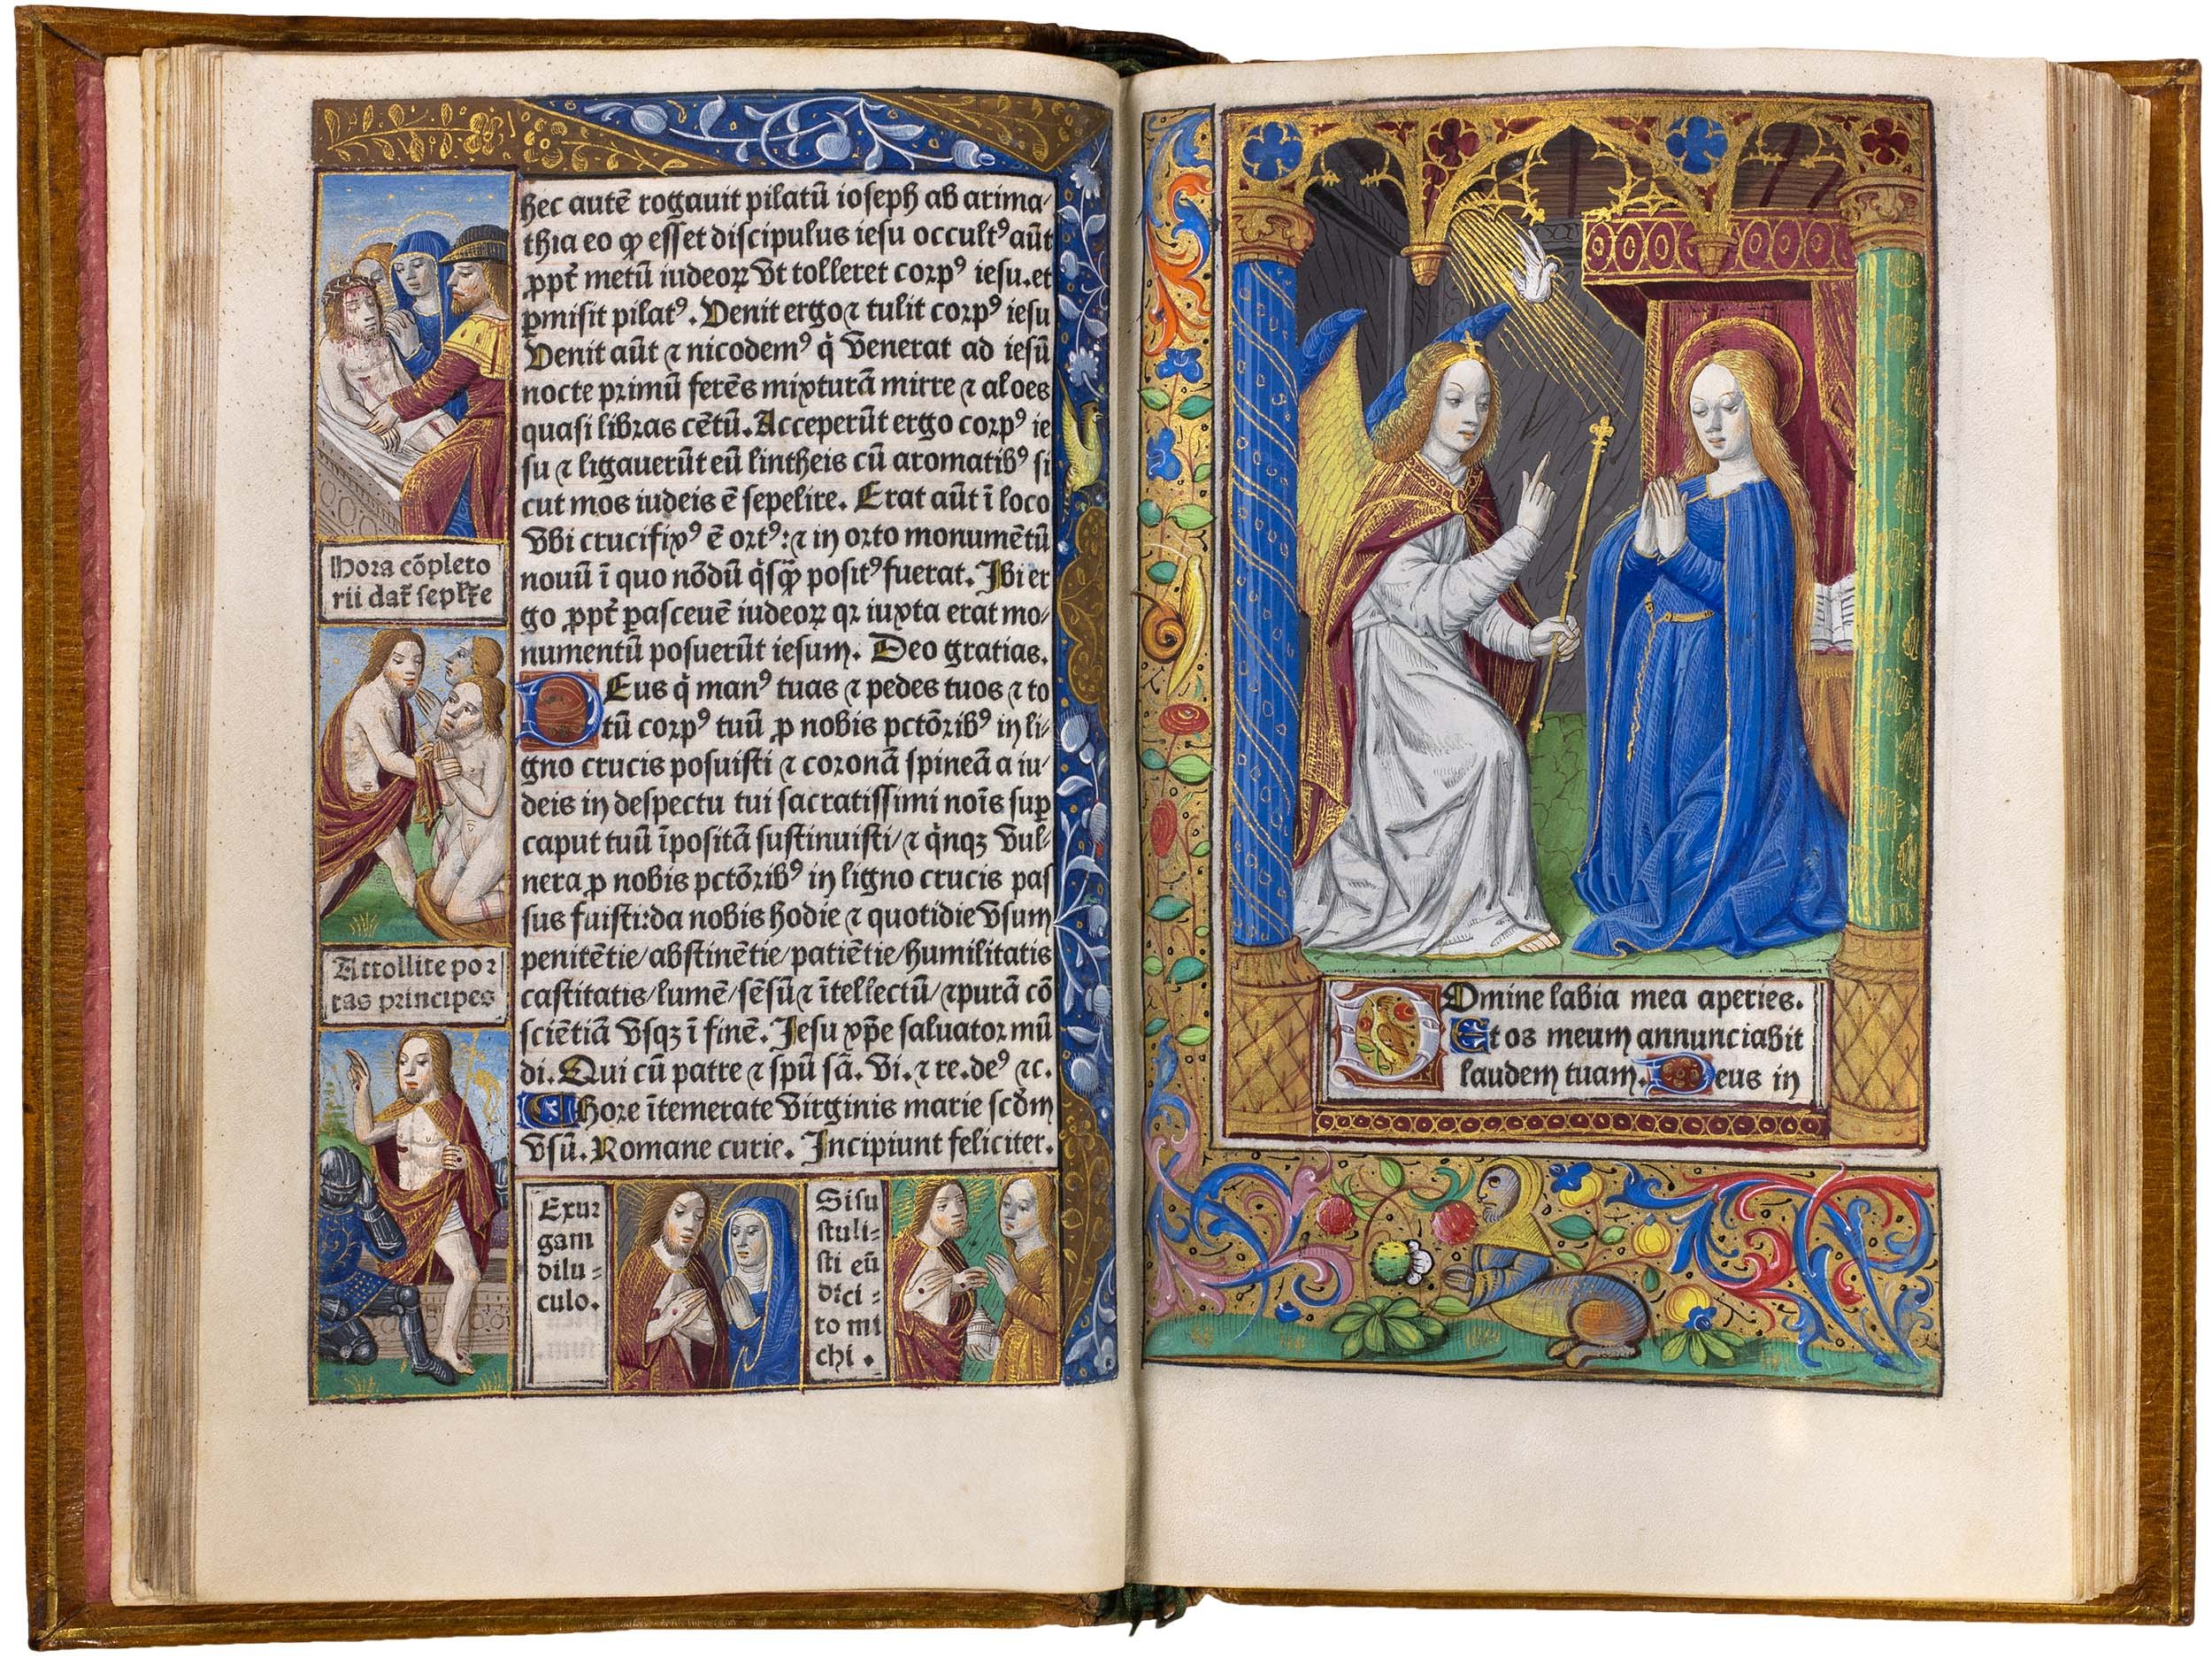 Horae-bmv-pigouchet-19-april-1494-pigouchet-robert-gaguin-illuminated-vellum-copy-20.jpg